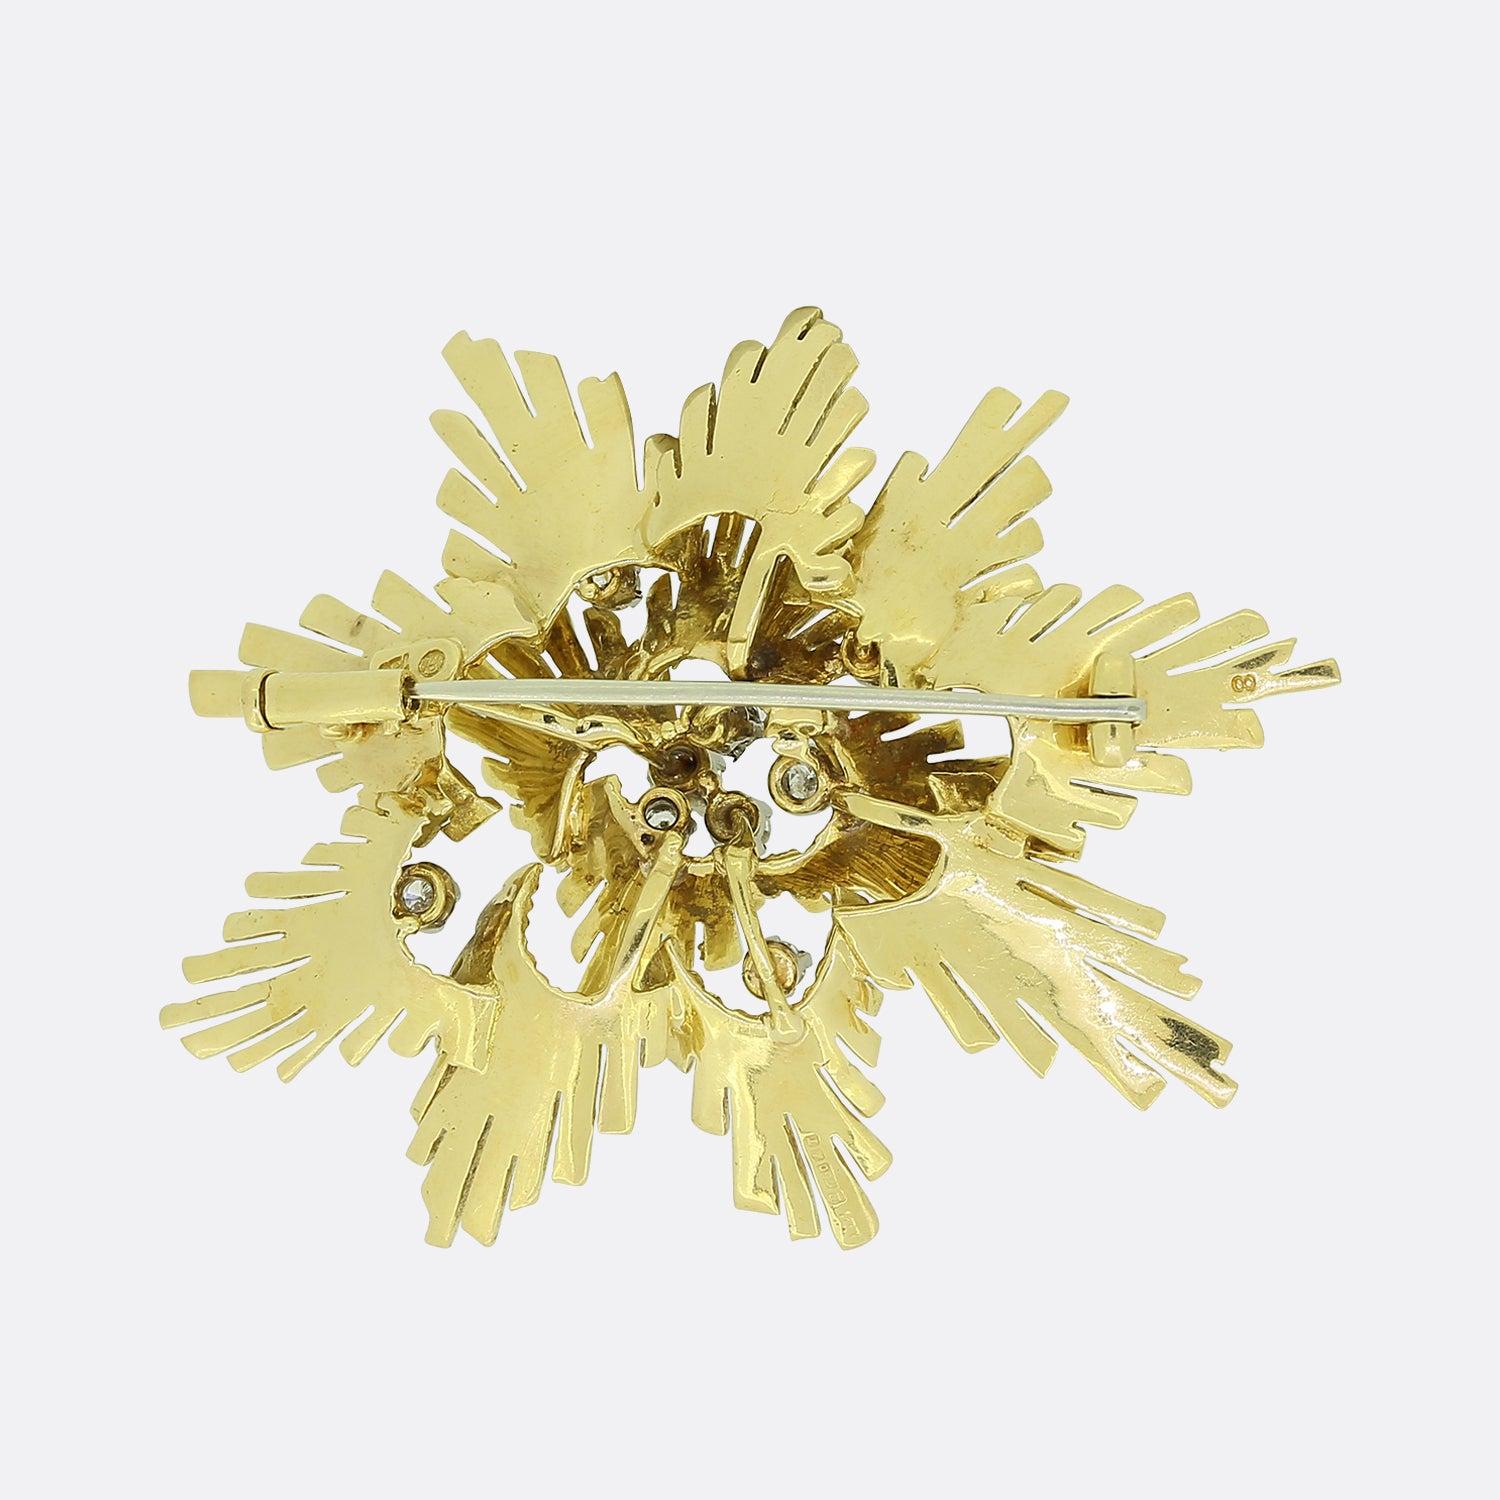 Il s'agit d'une broche vintage en or jaune 18ct, ornée de diamants. Il présente un joli motif texturé avec des diamants sertis sporadiquement autour du modèle en or 3D. La broche est fabriquée dans un style typique des années 1980, mais elle porte